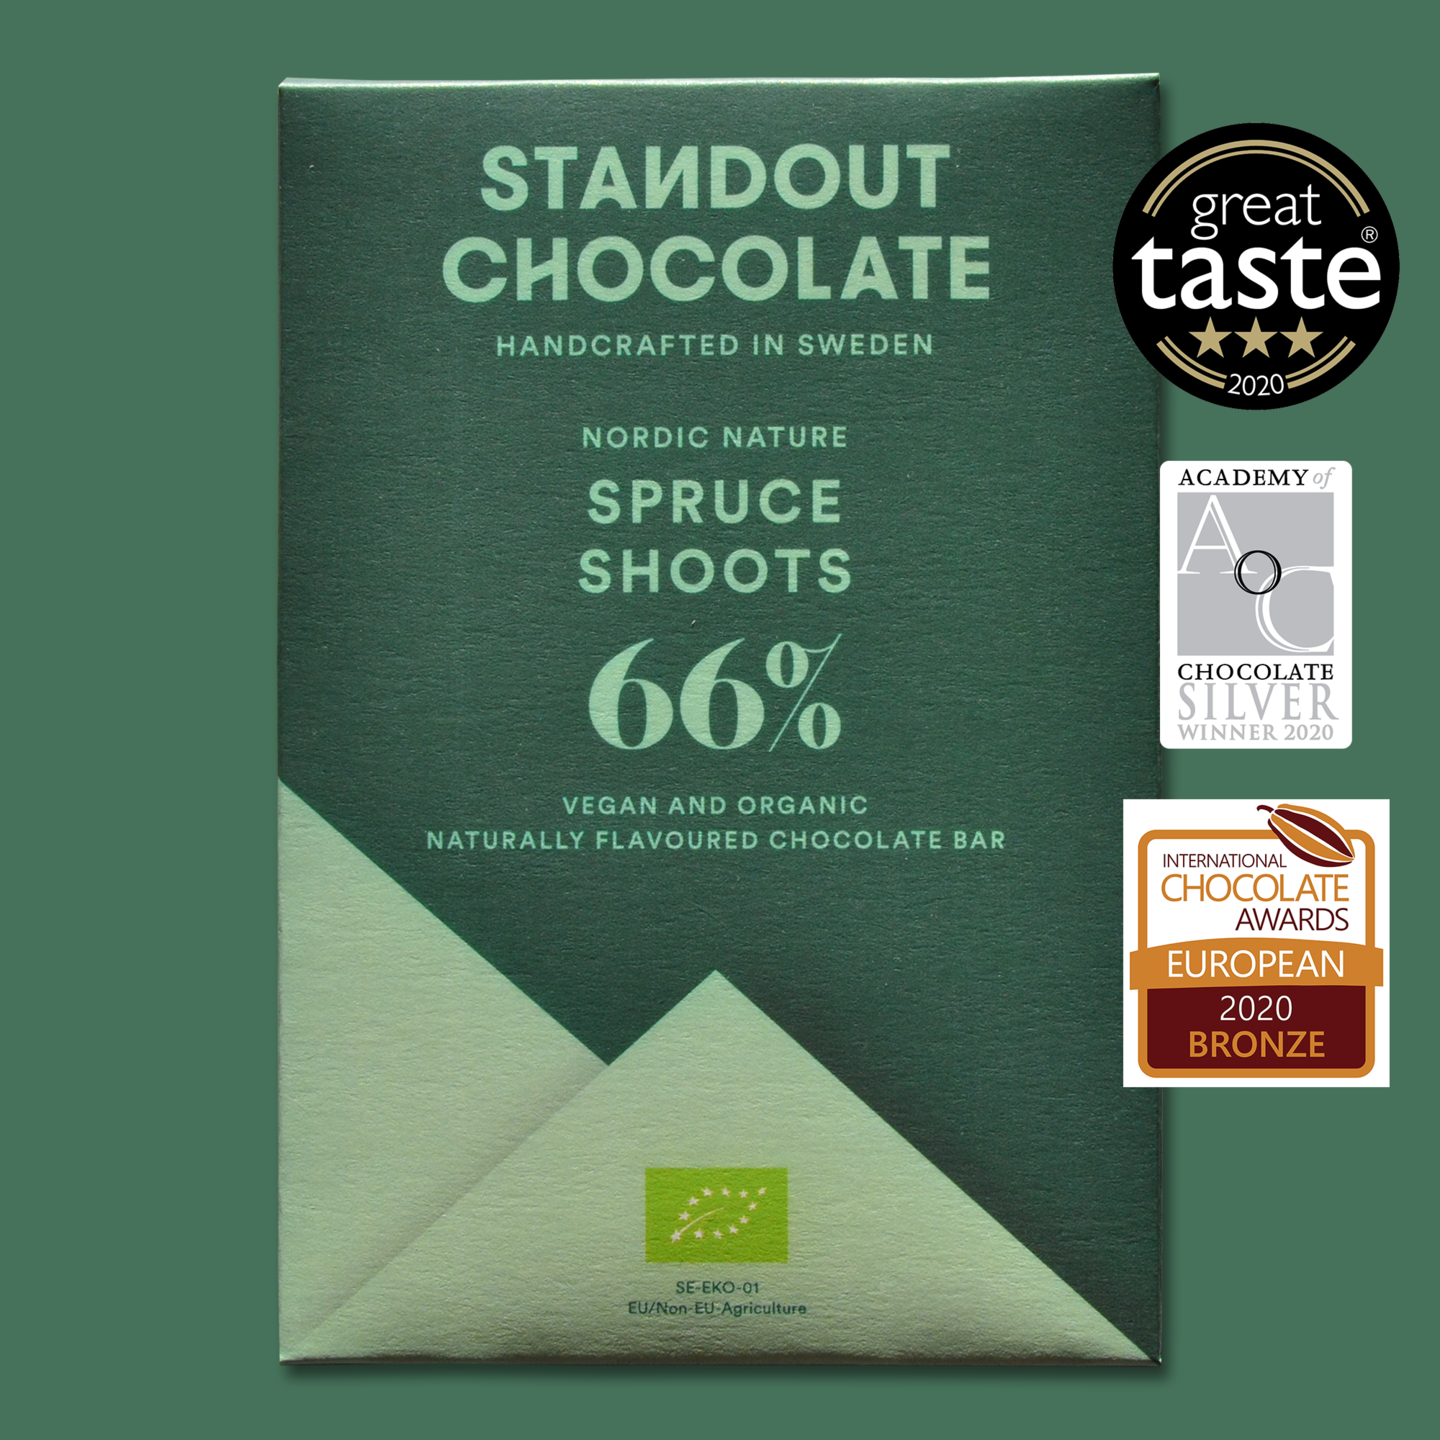 STANDOUT CHOCOLATE | Dunkle Schokolade & Naturfichtentrieben Nordic Nature »Spruce Shoots« 66% | 50g